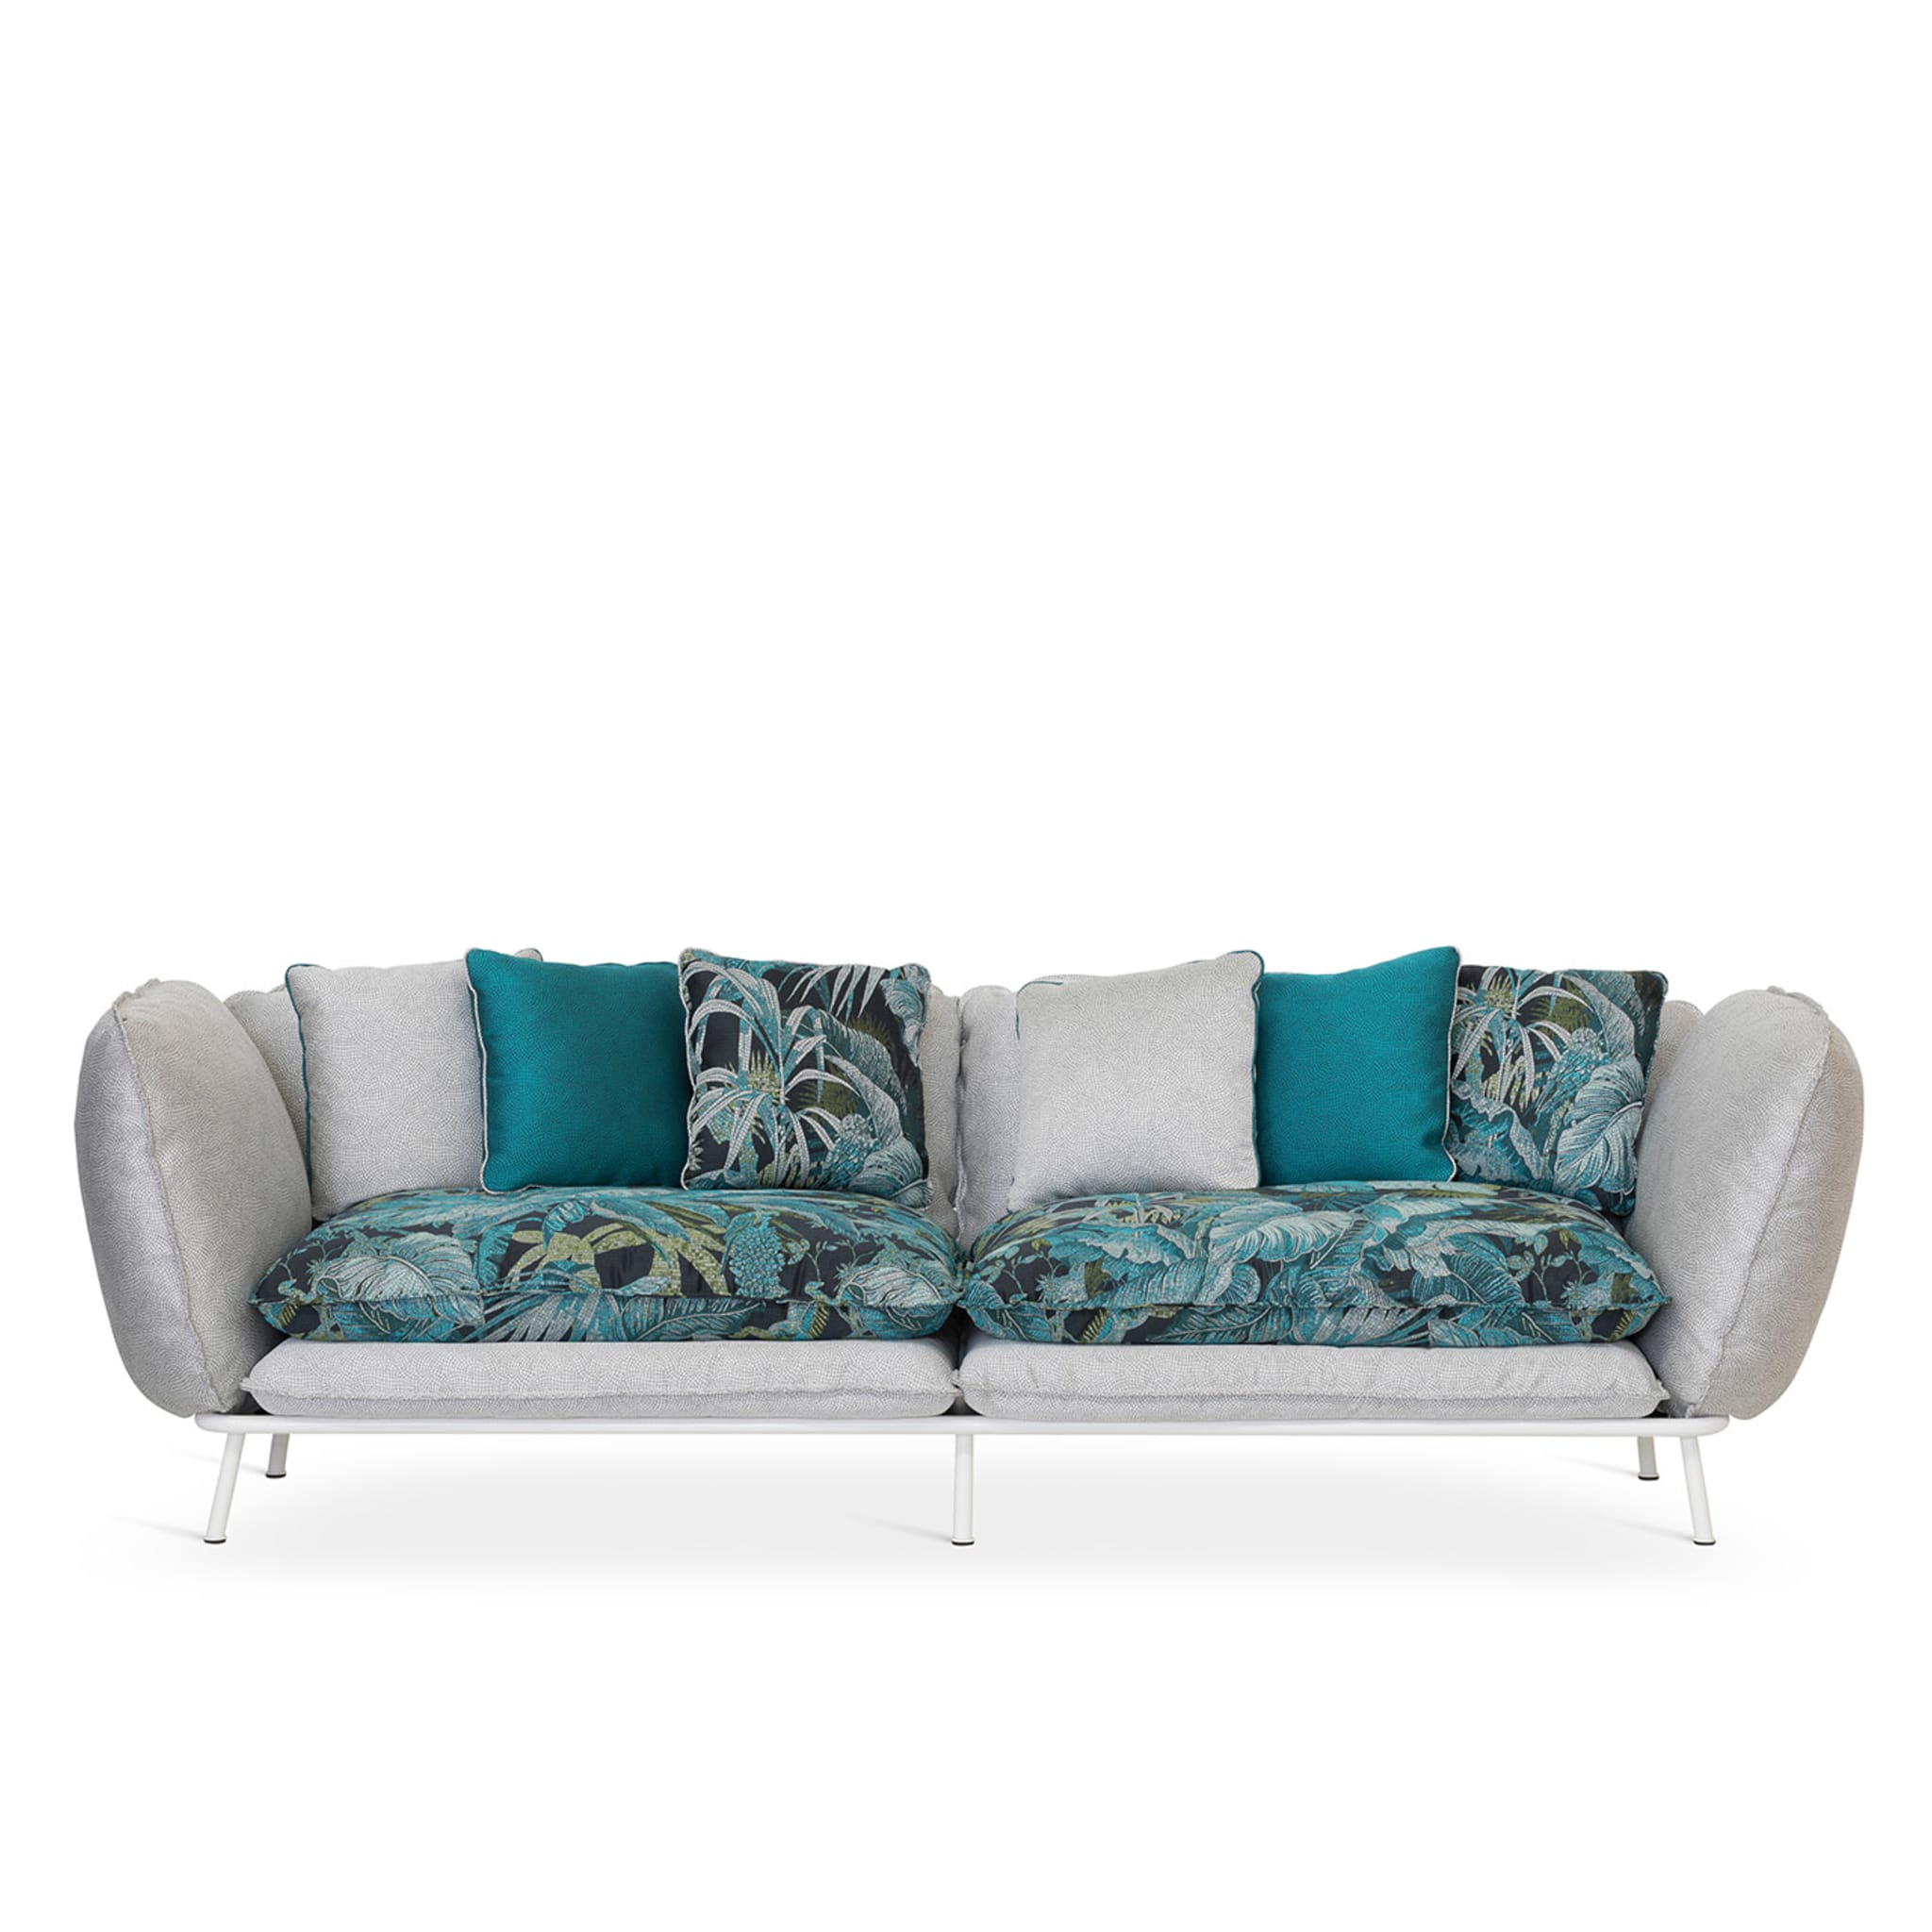 Lipari Outdoor 2-Seat Sofa by Massimiliano Raggi - Alternative view 1